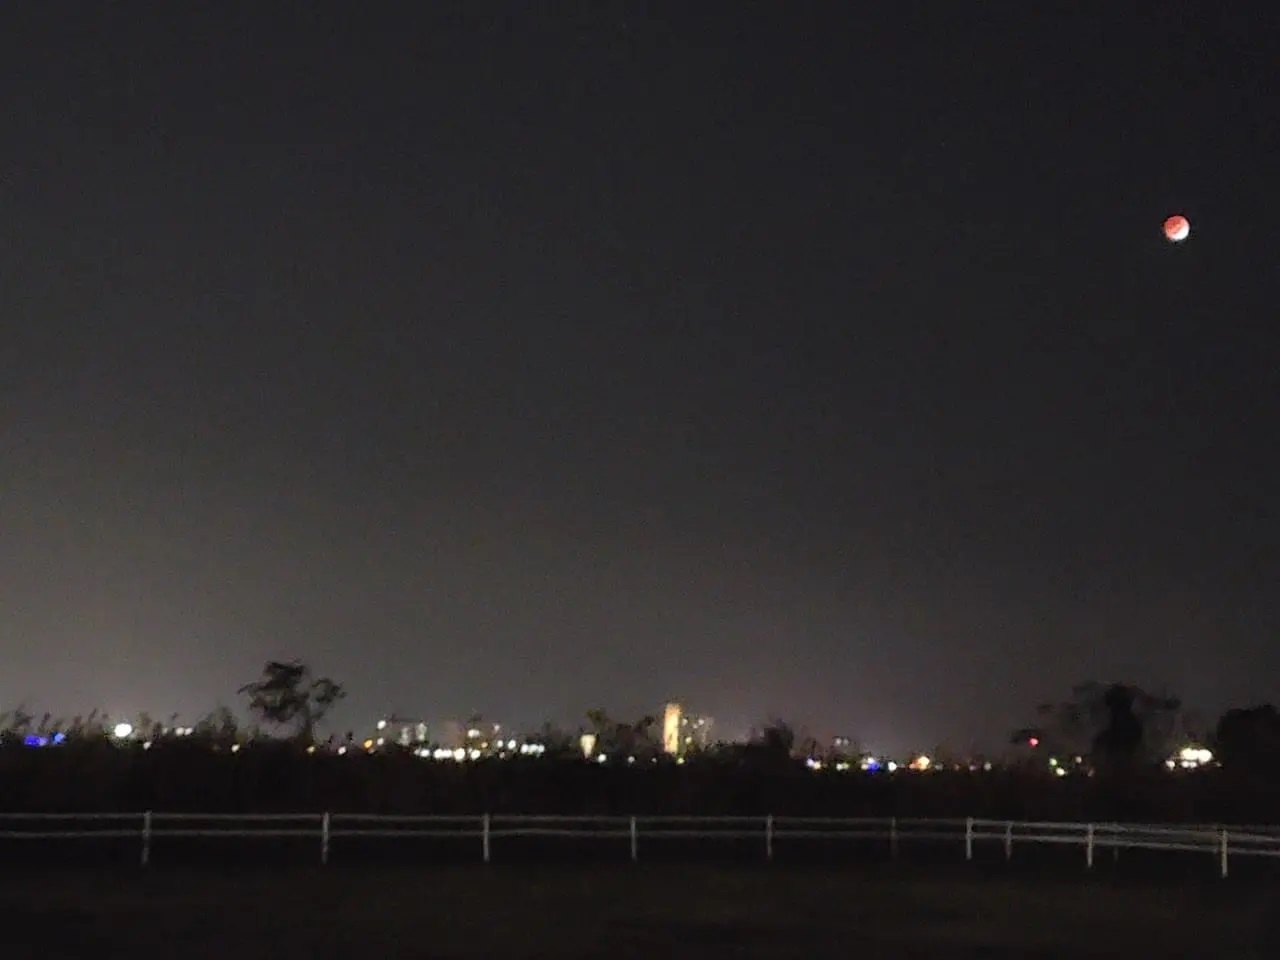 徳島市内にある河川敷から見た夜間風景。2021年11月19日の「部分月食」のときに撮影したもの。